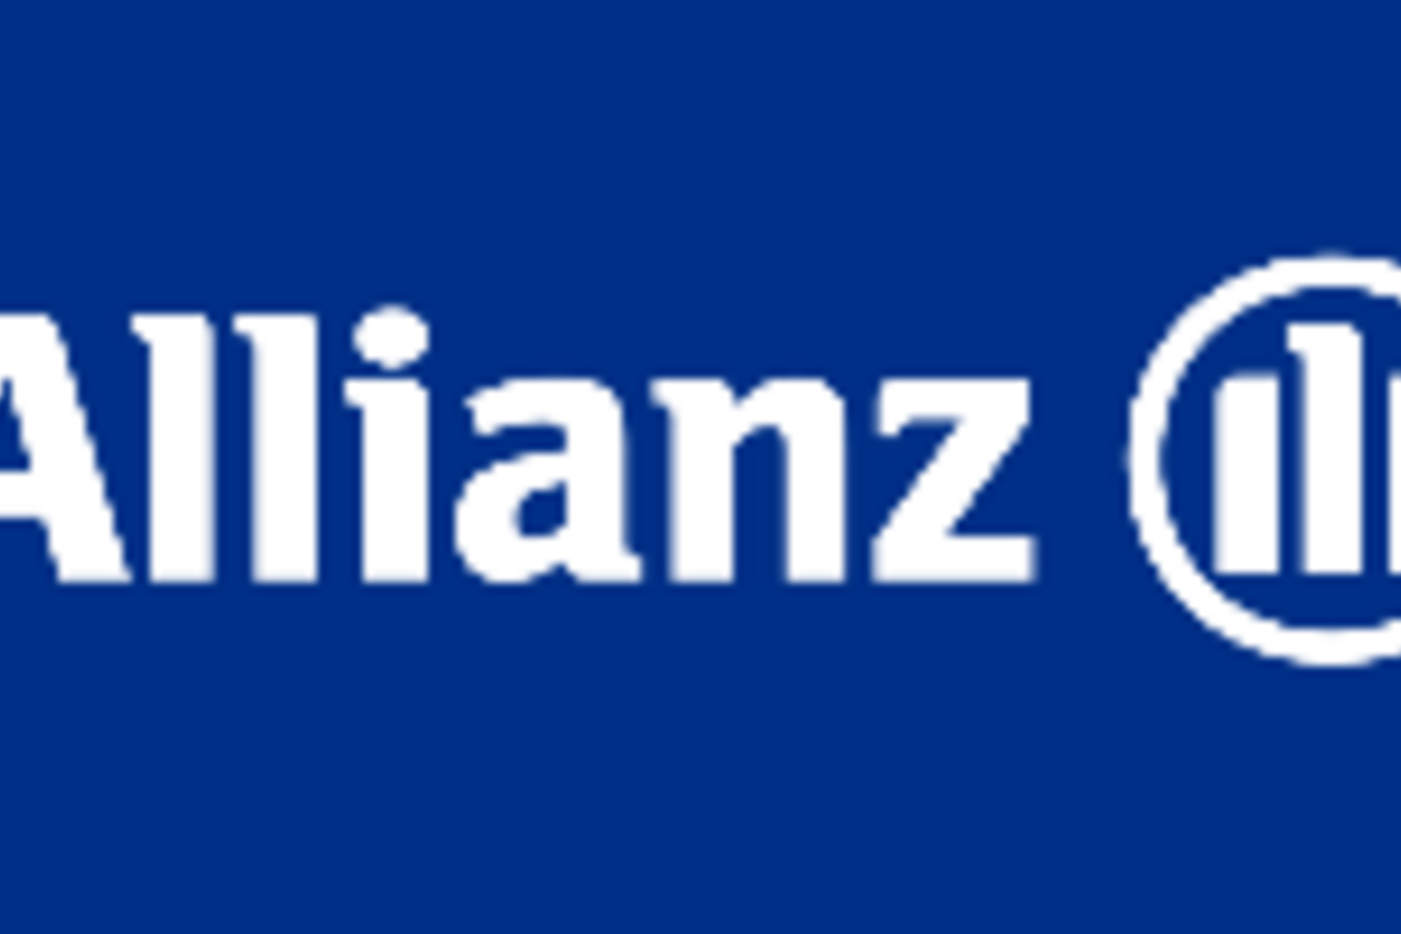 Allianz-Firmenlogo